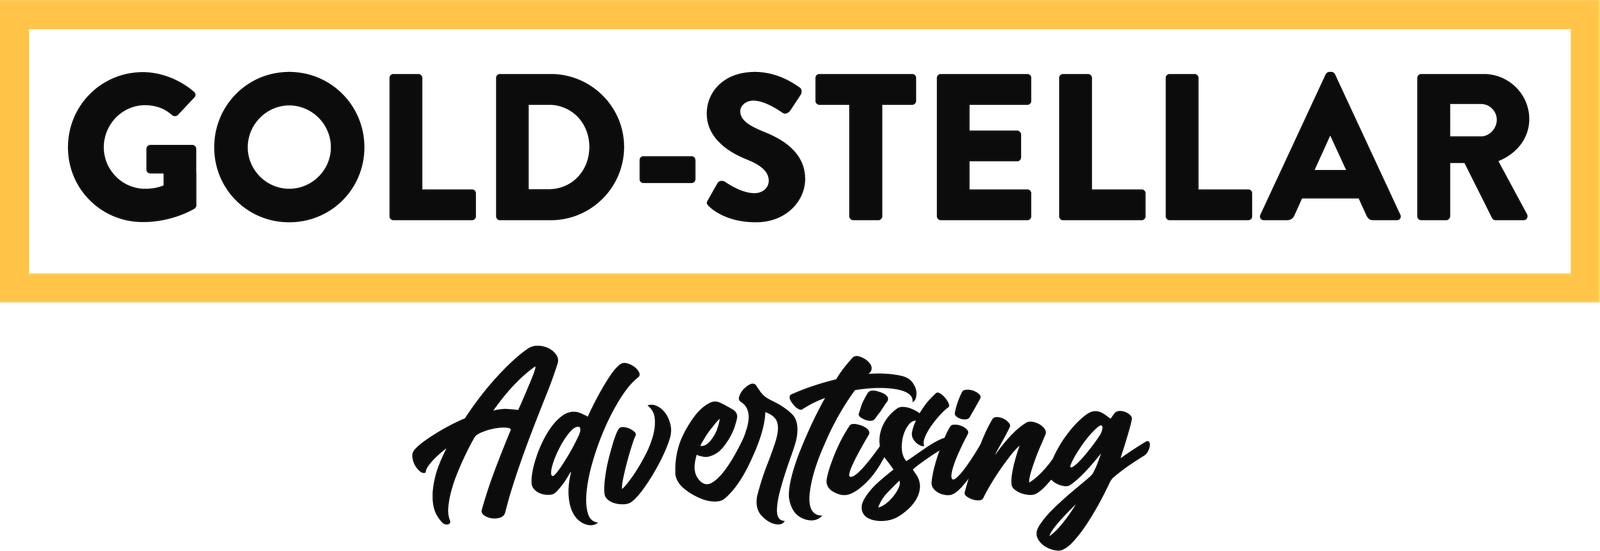 Gold Stellar Advertising Logo